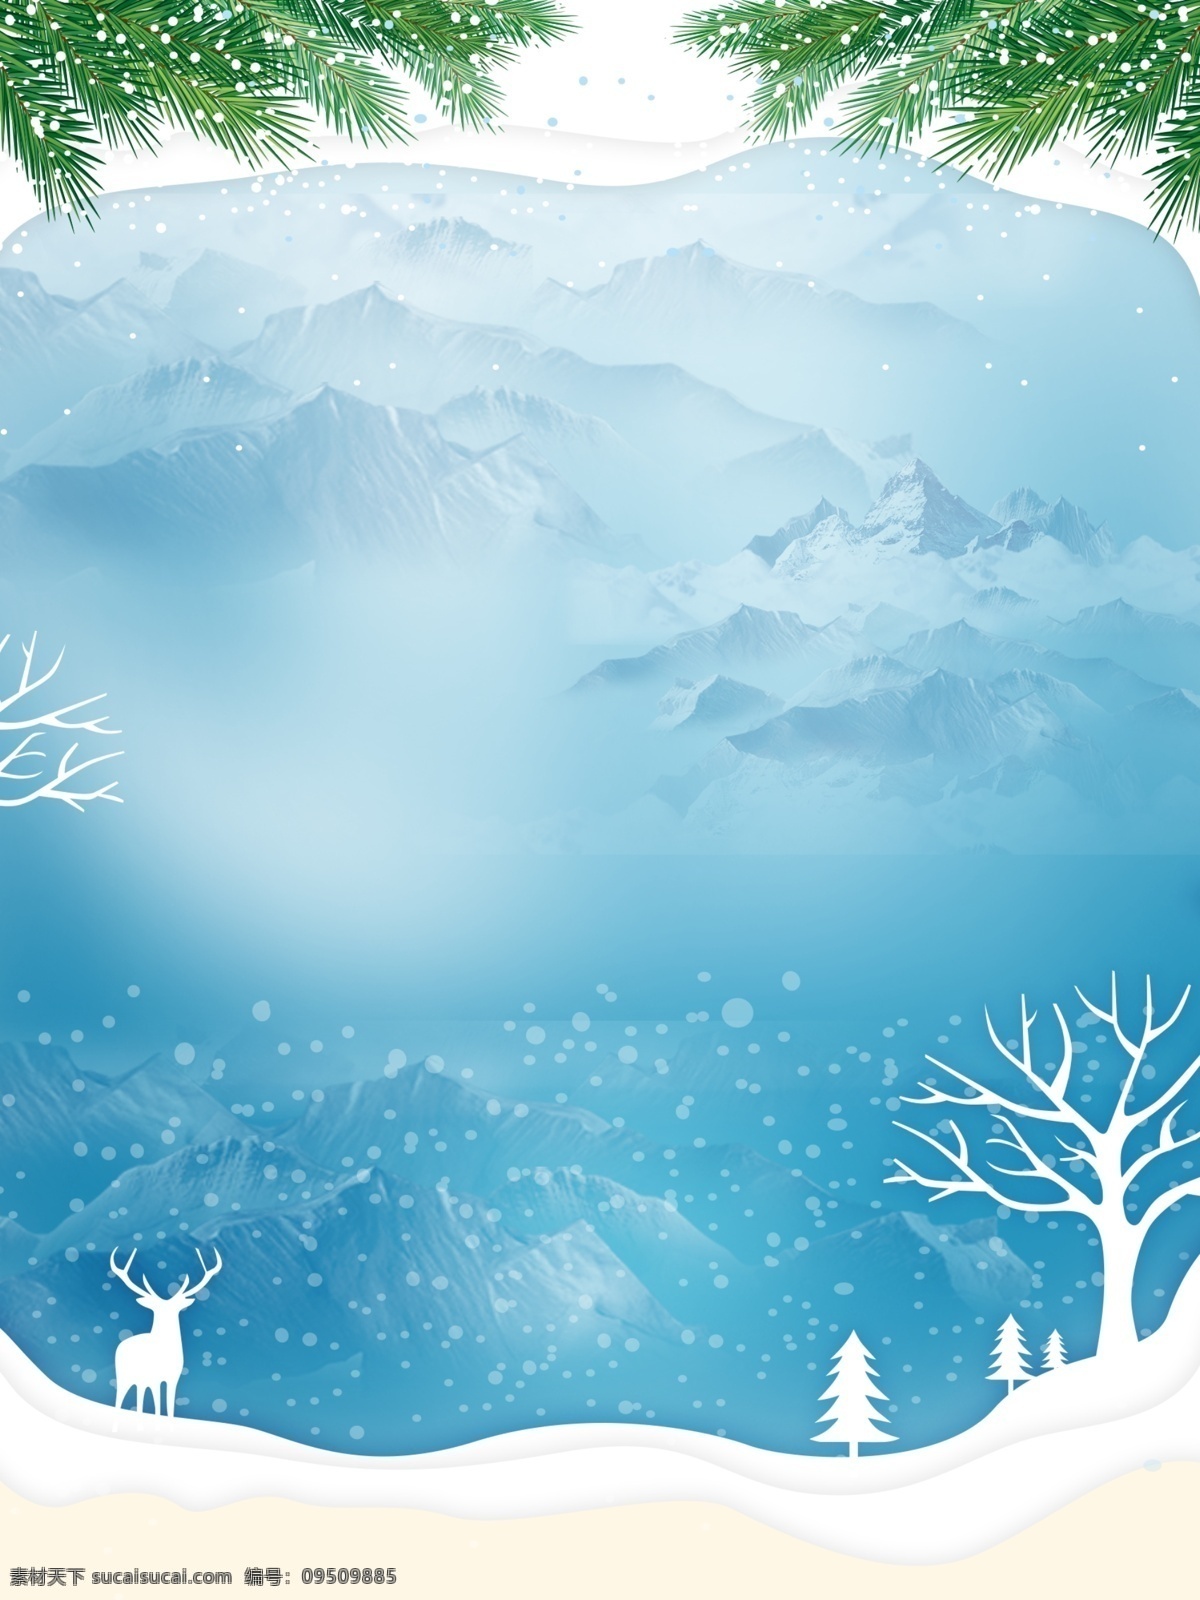 手绘 小 清新 冬季 下雪天 雪地 背景 唯美 简约 蓝色 冬天 冬至背景 下雪 冬至节气 传统节气